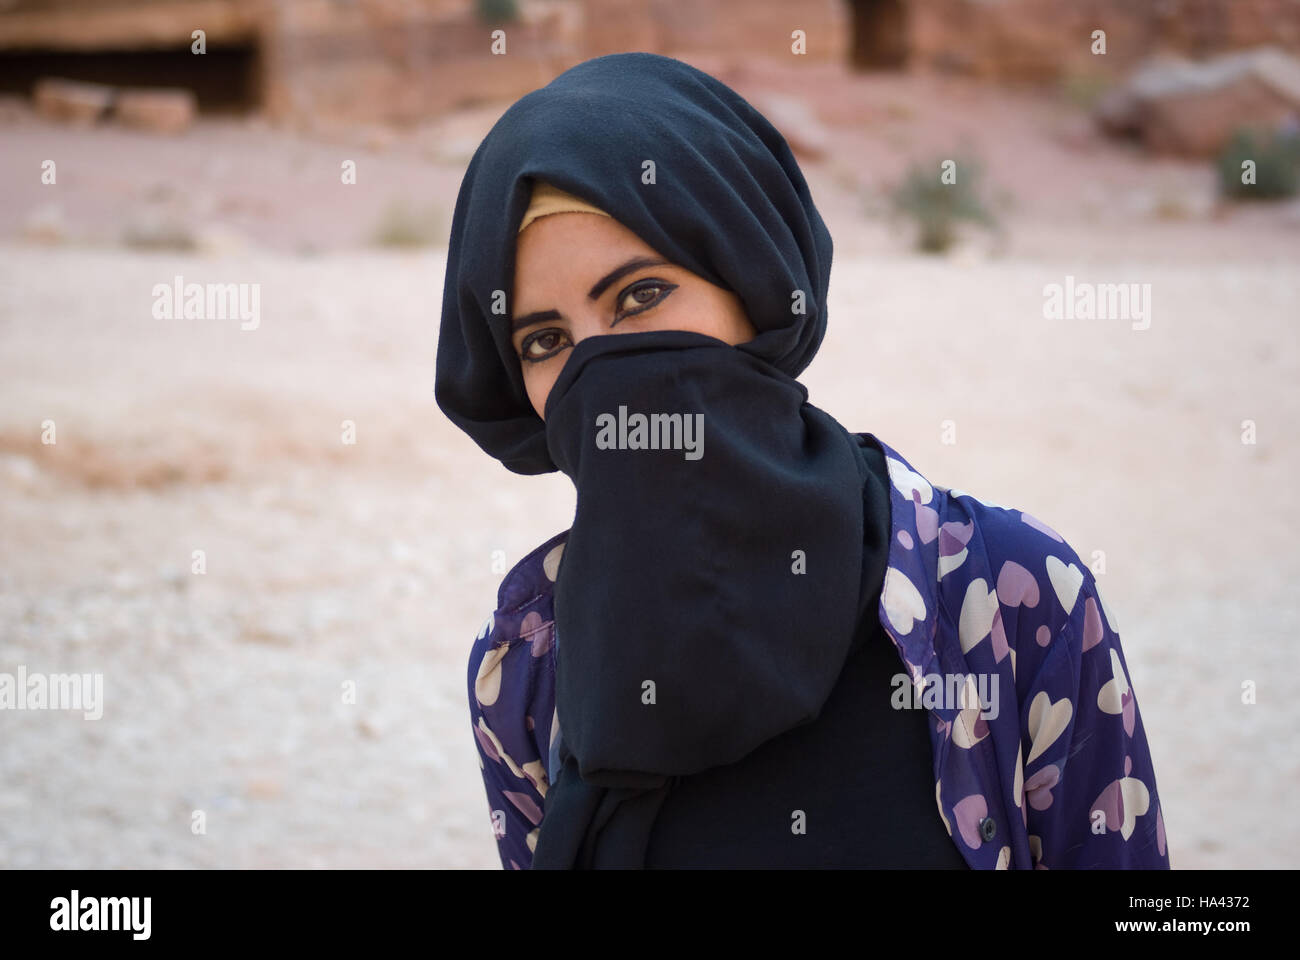 Gros plan d'une jeune fille bédouine avec face cachée derrière le voile posing at camera Banque D'Images